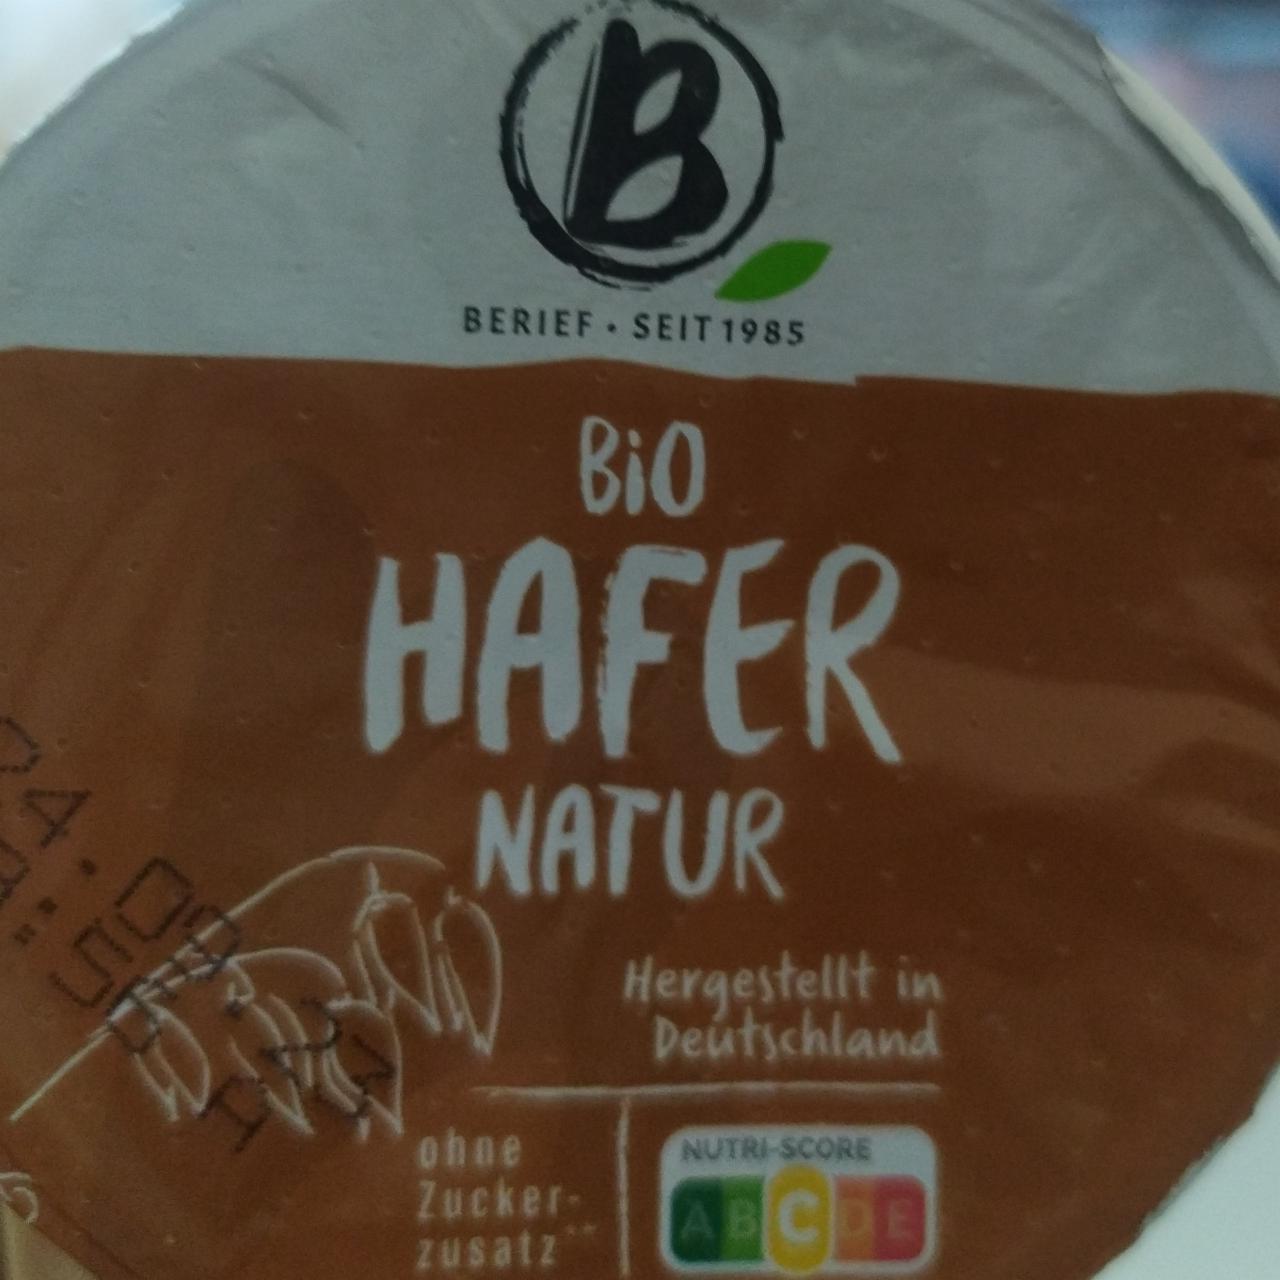 Фото - йогурт овсяный натуральный bio hafer natur Berief